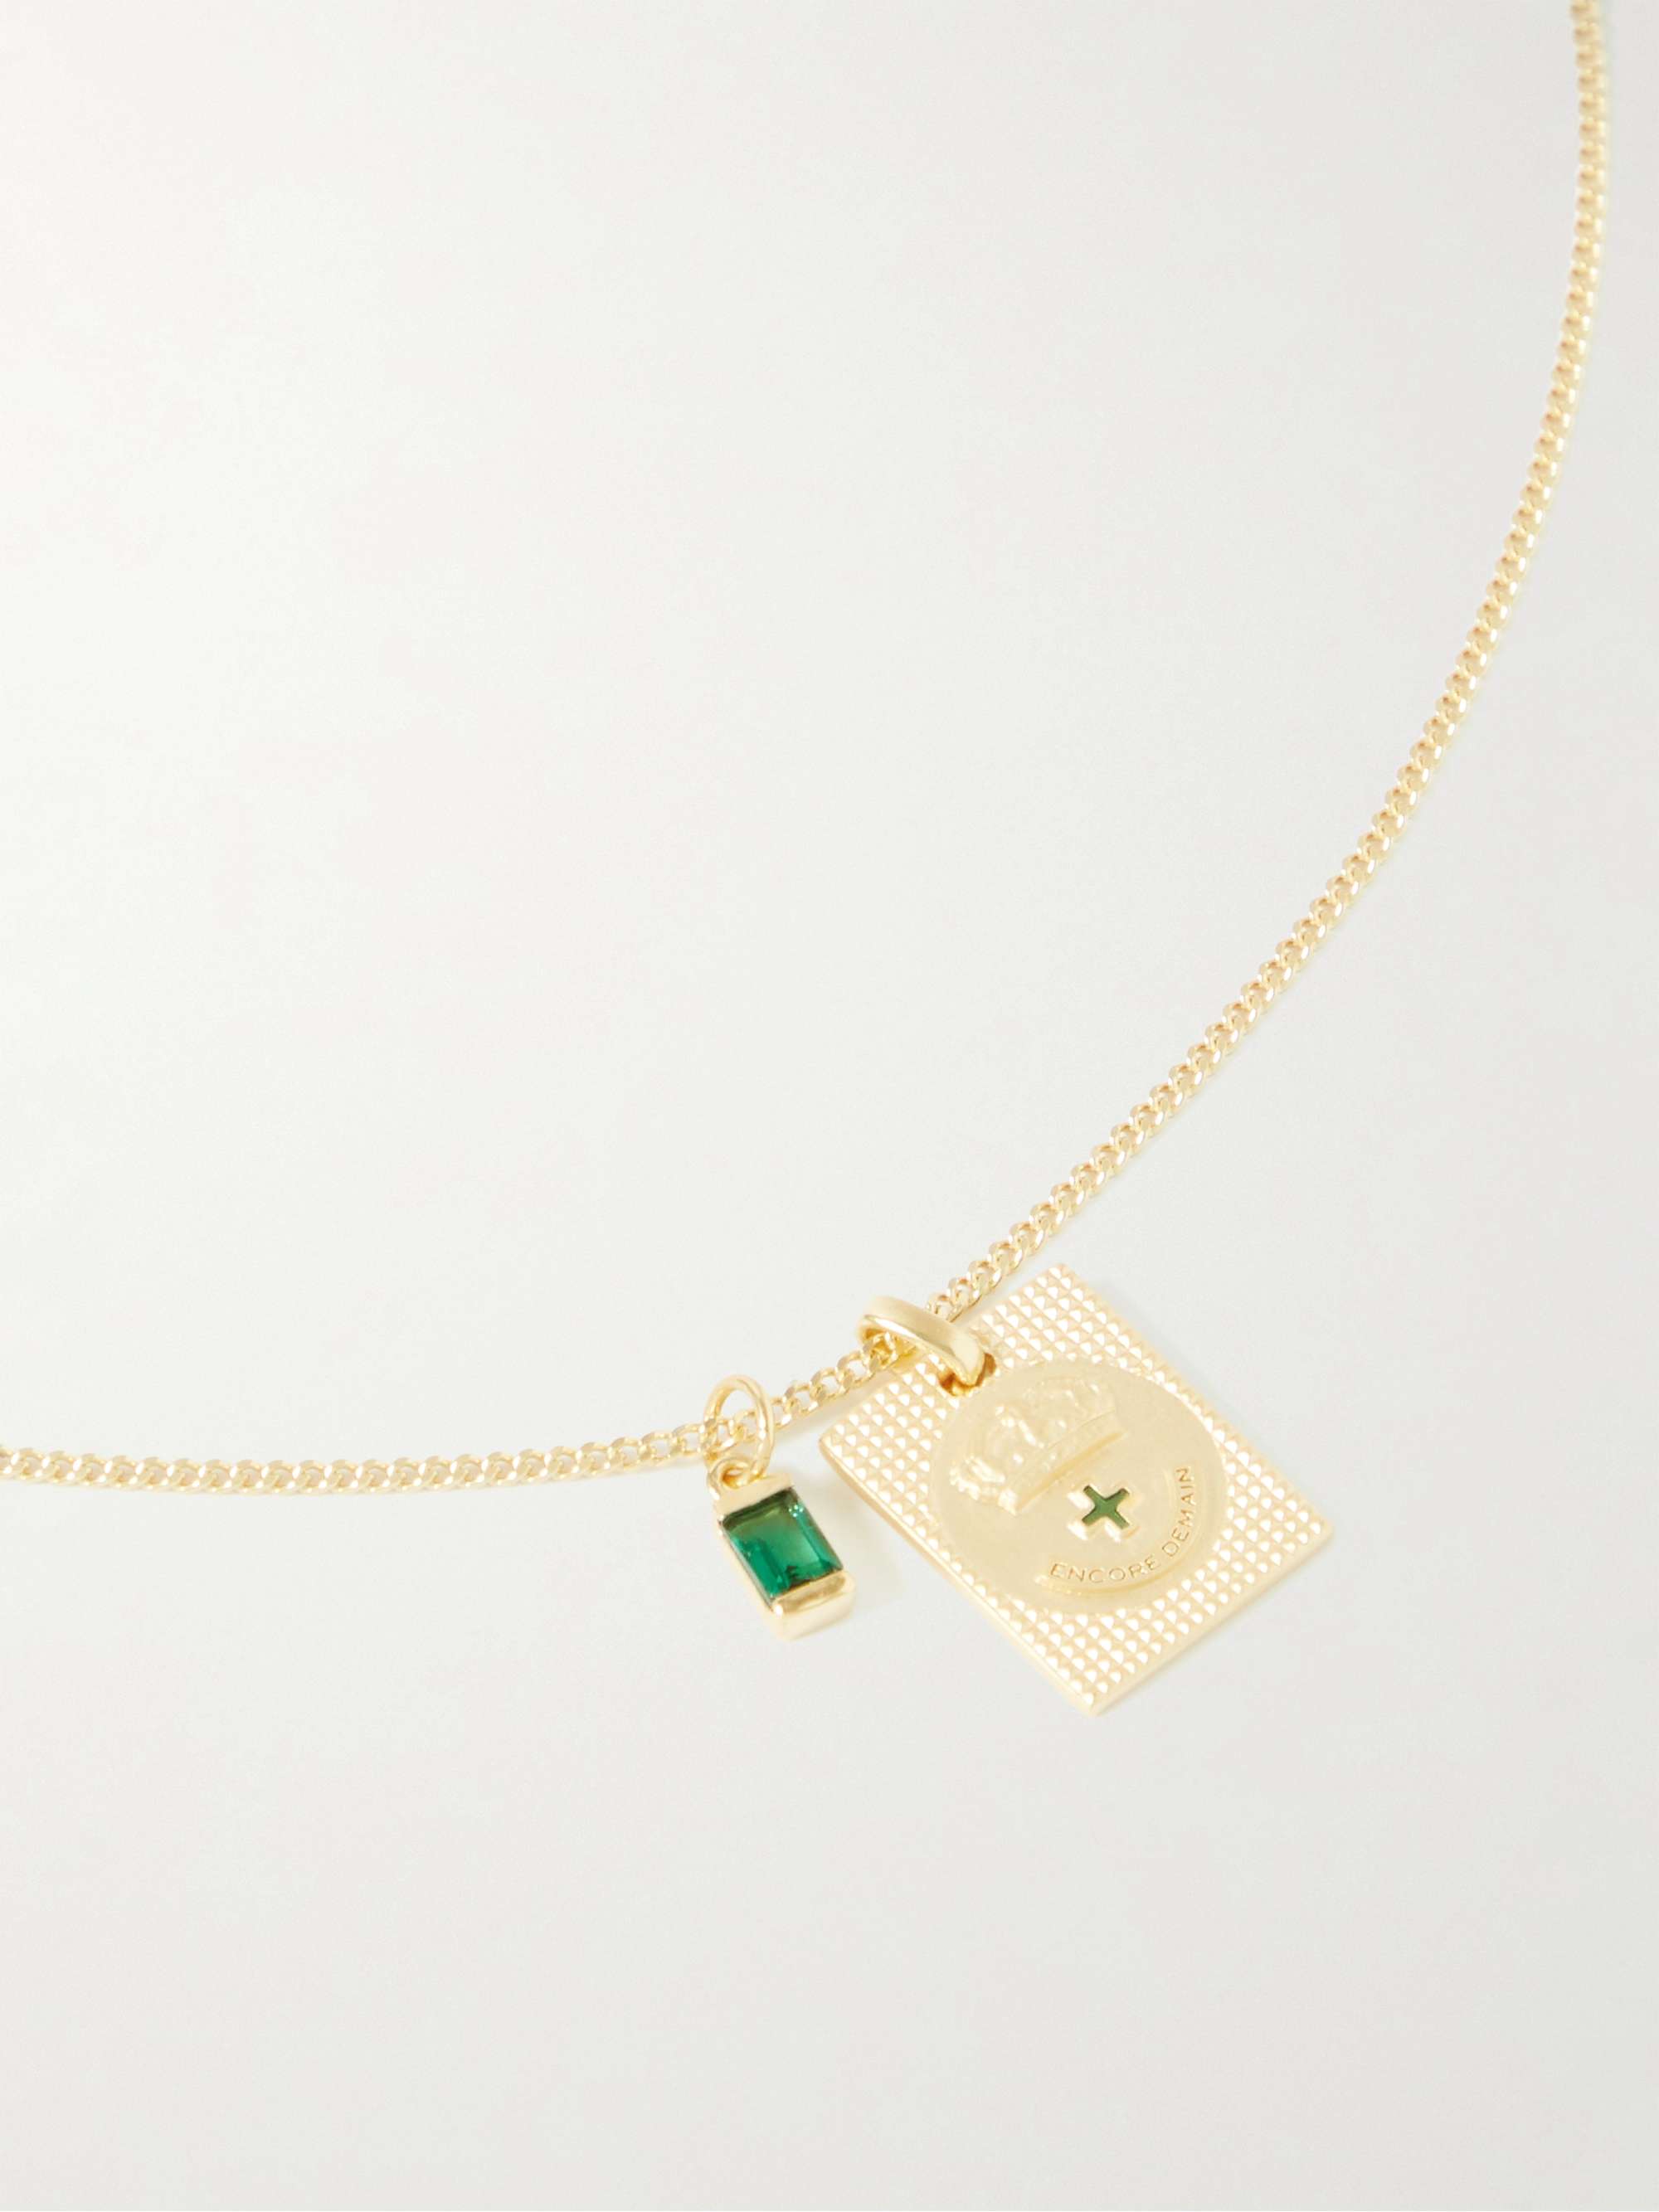 MIANSAI Lineage Gold Vermeil and Quartz Pendant Necklace